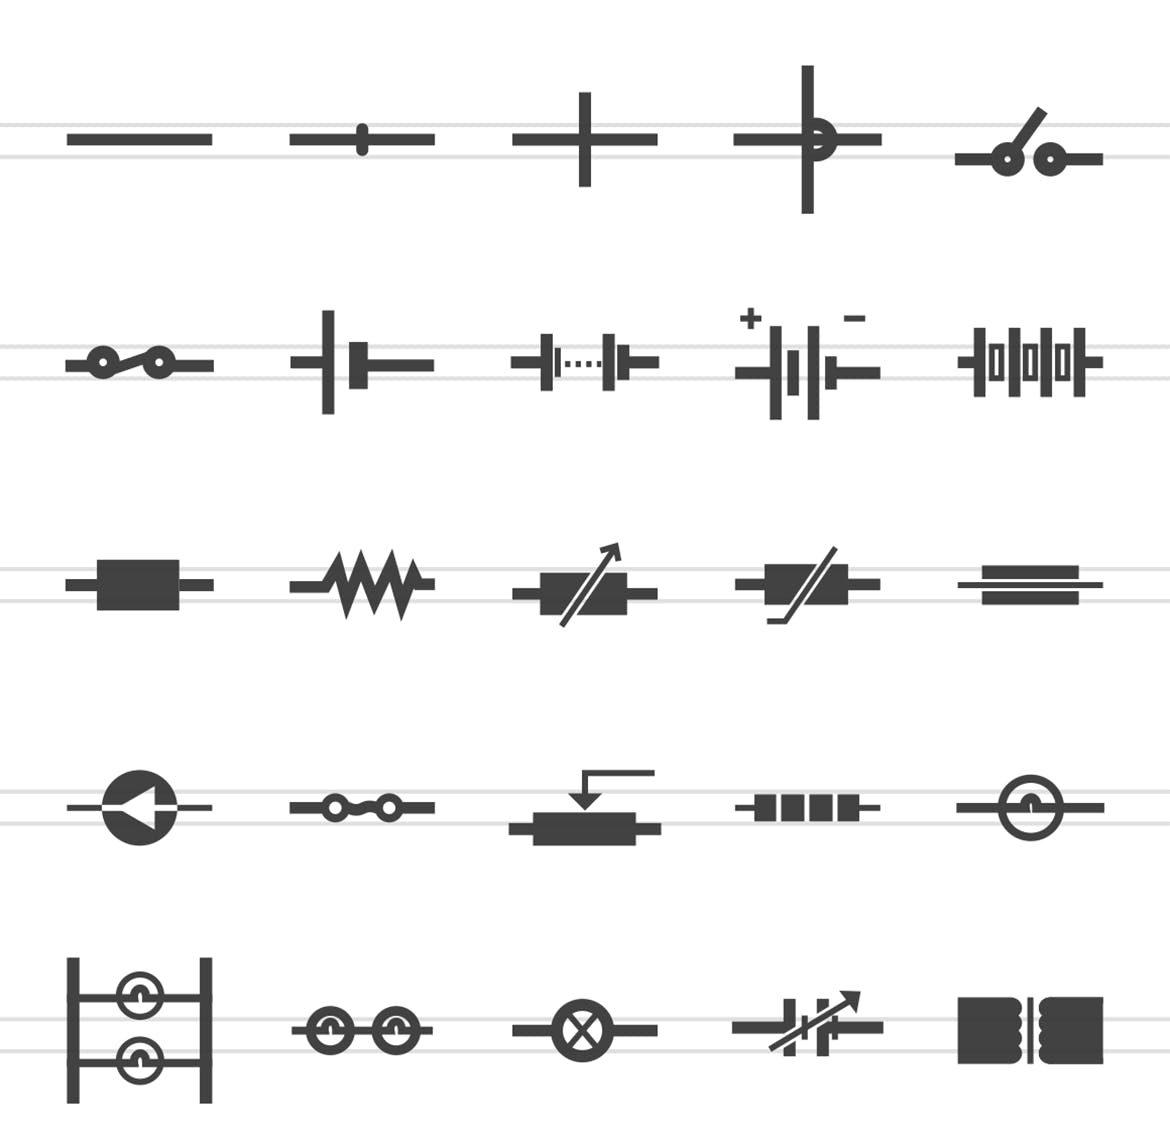 50枚电路线路板主题黑色字体非凡图库精选图标 50 Electric Circuits Glyph Icons插图(1)